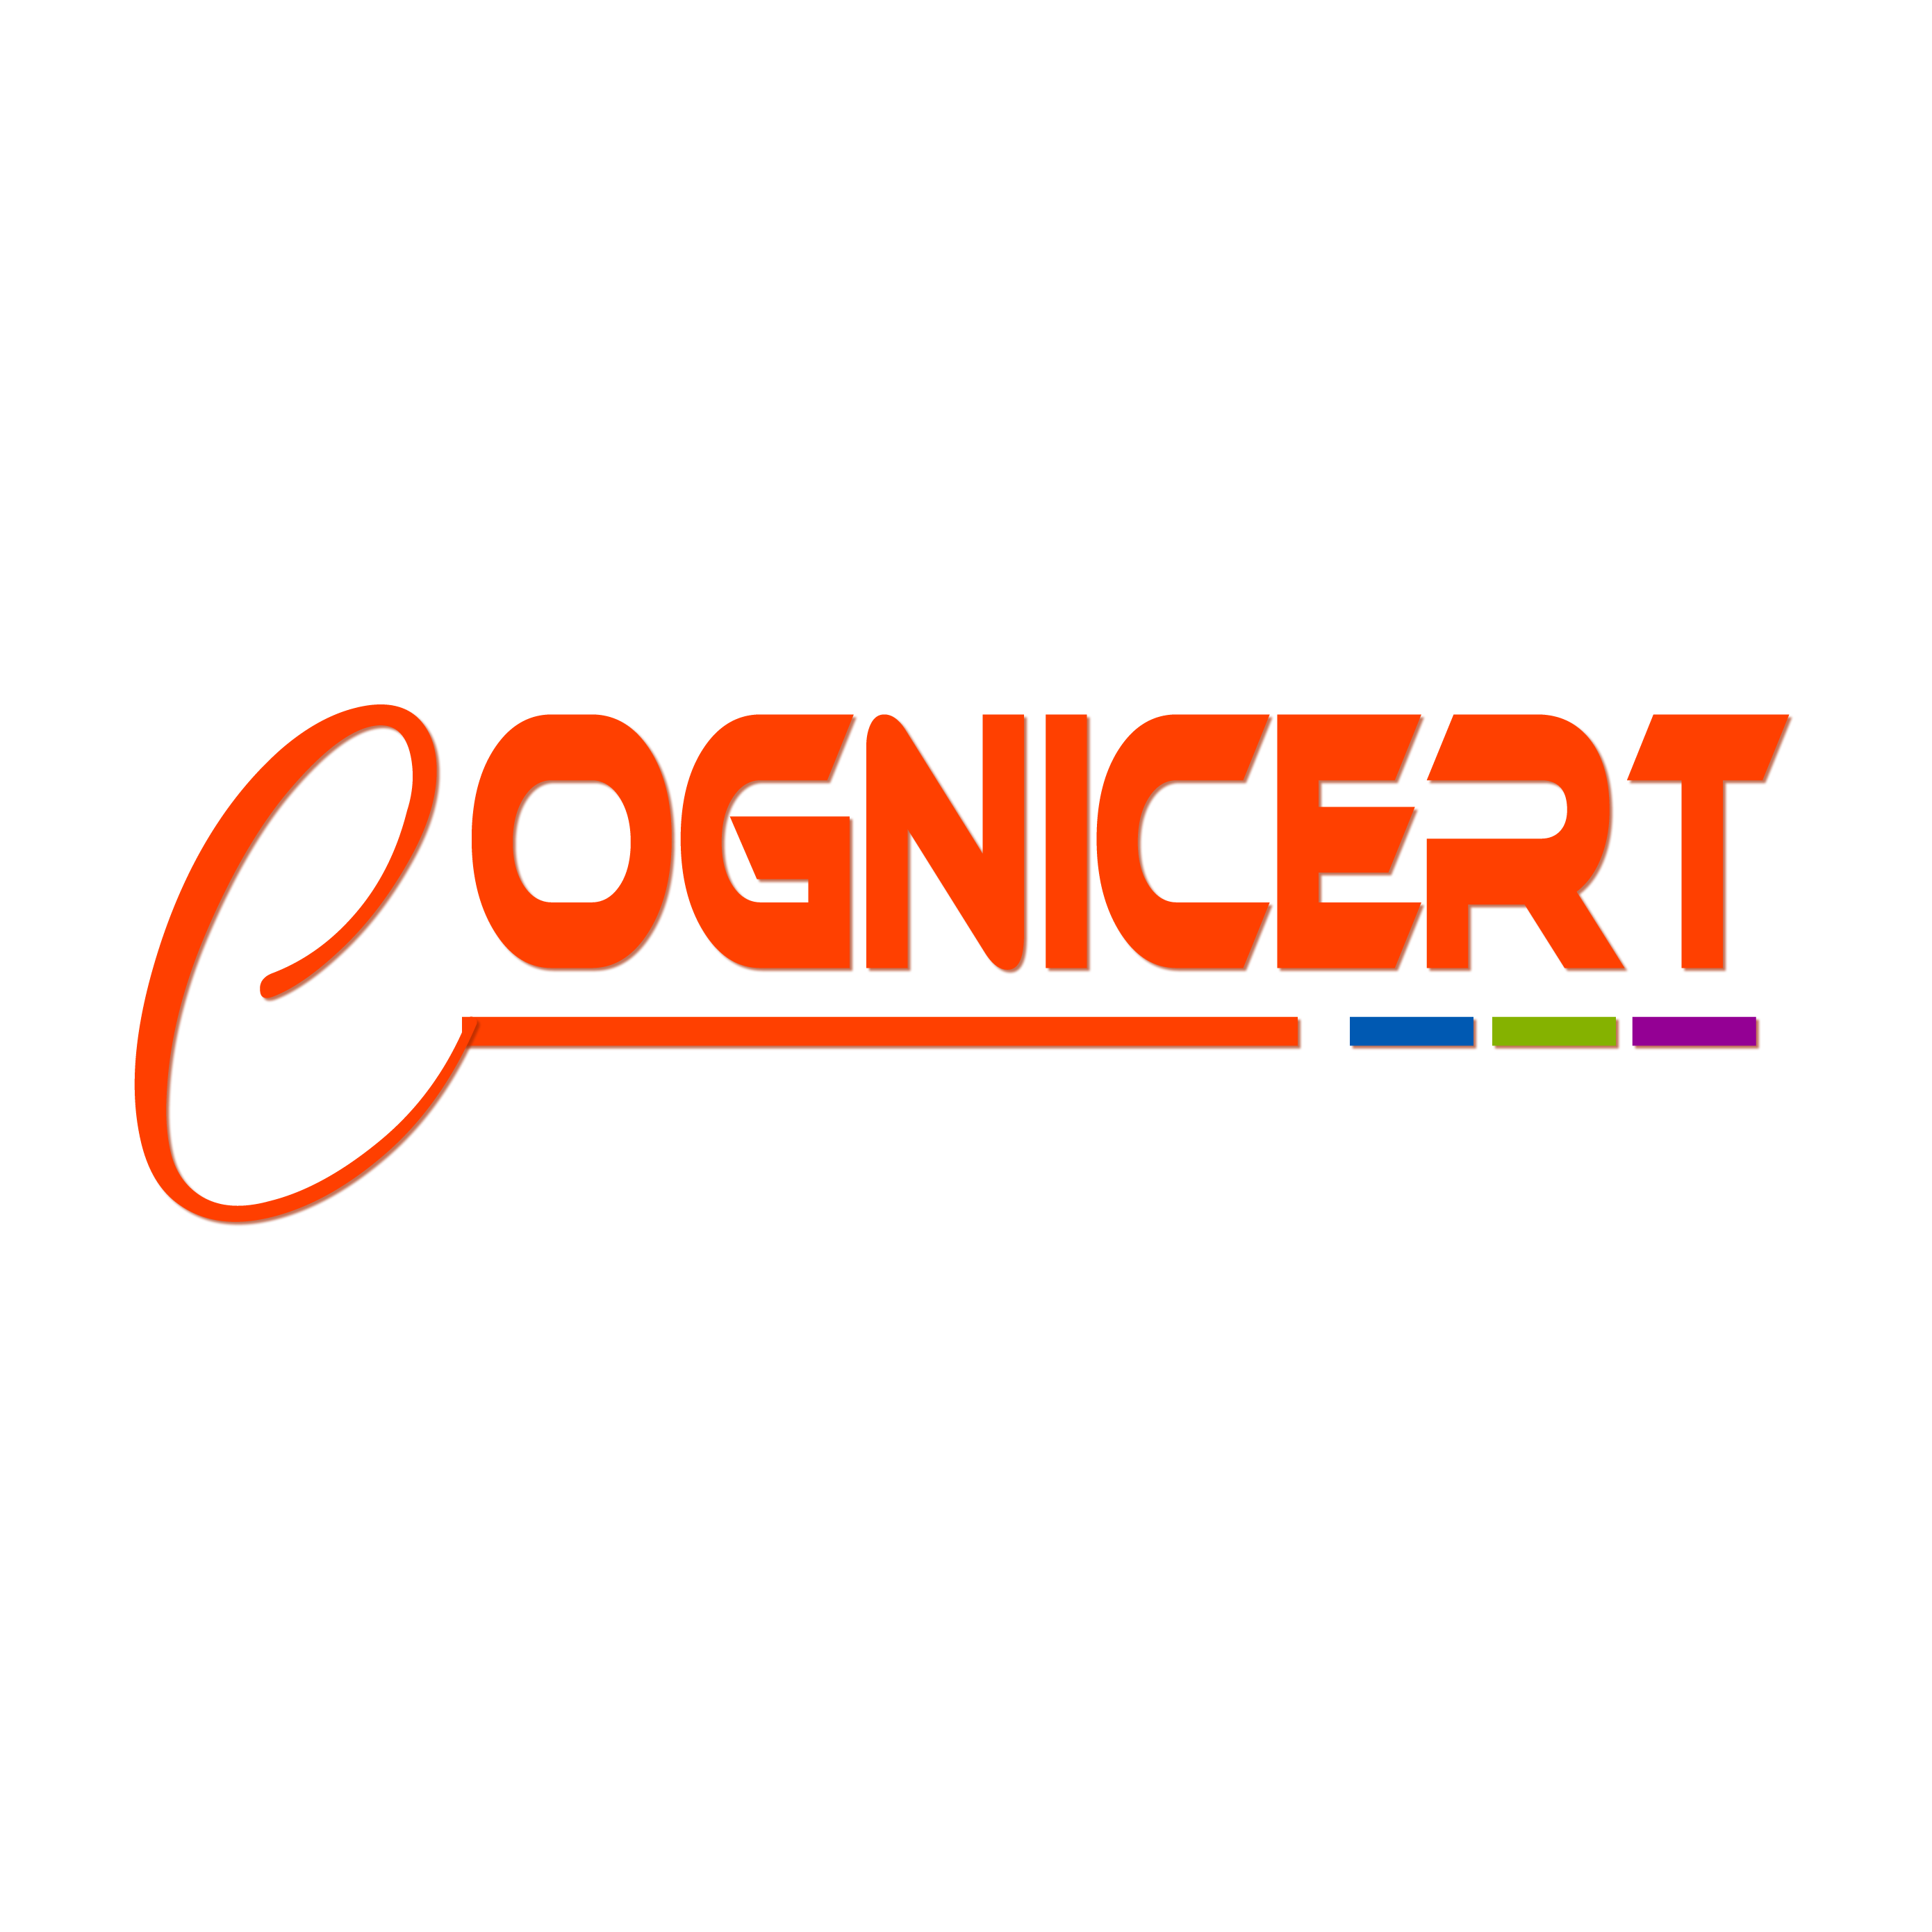 Cognicert Limited